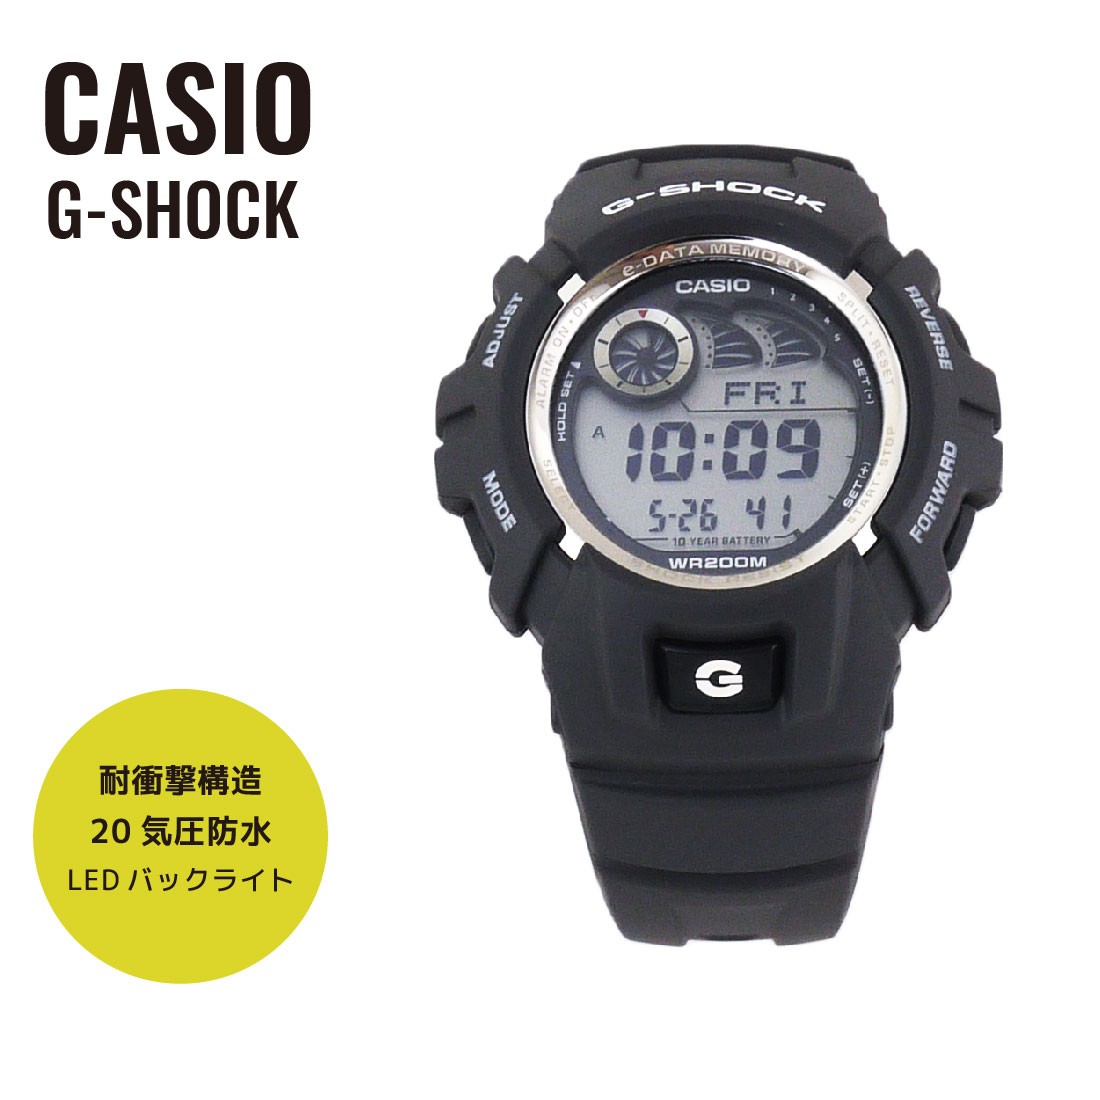 カシオ G-SHOCK 海外モデル G-2900F-8 メンズウォッチの商品画像